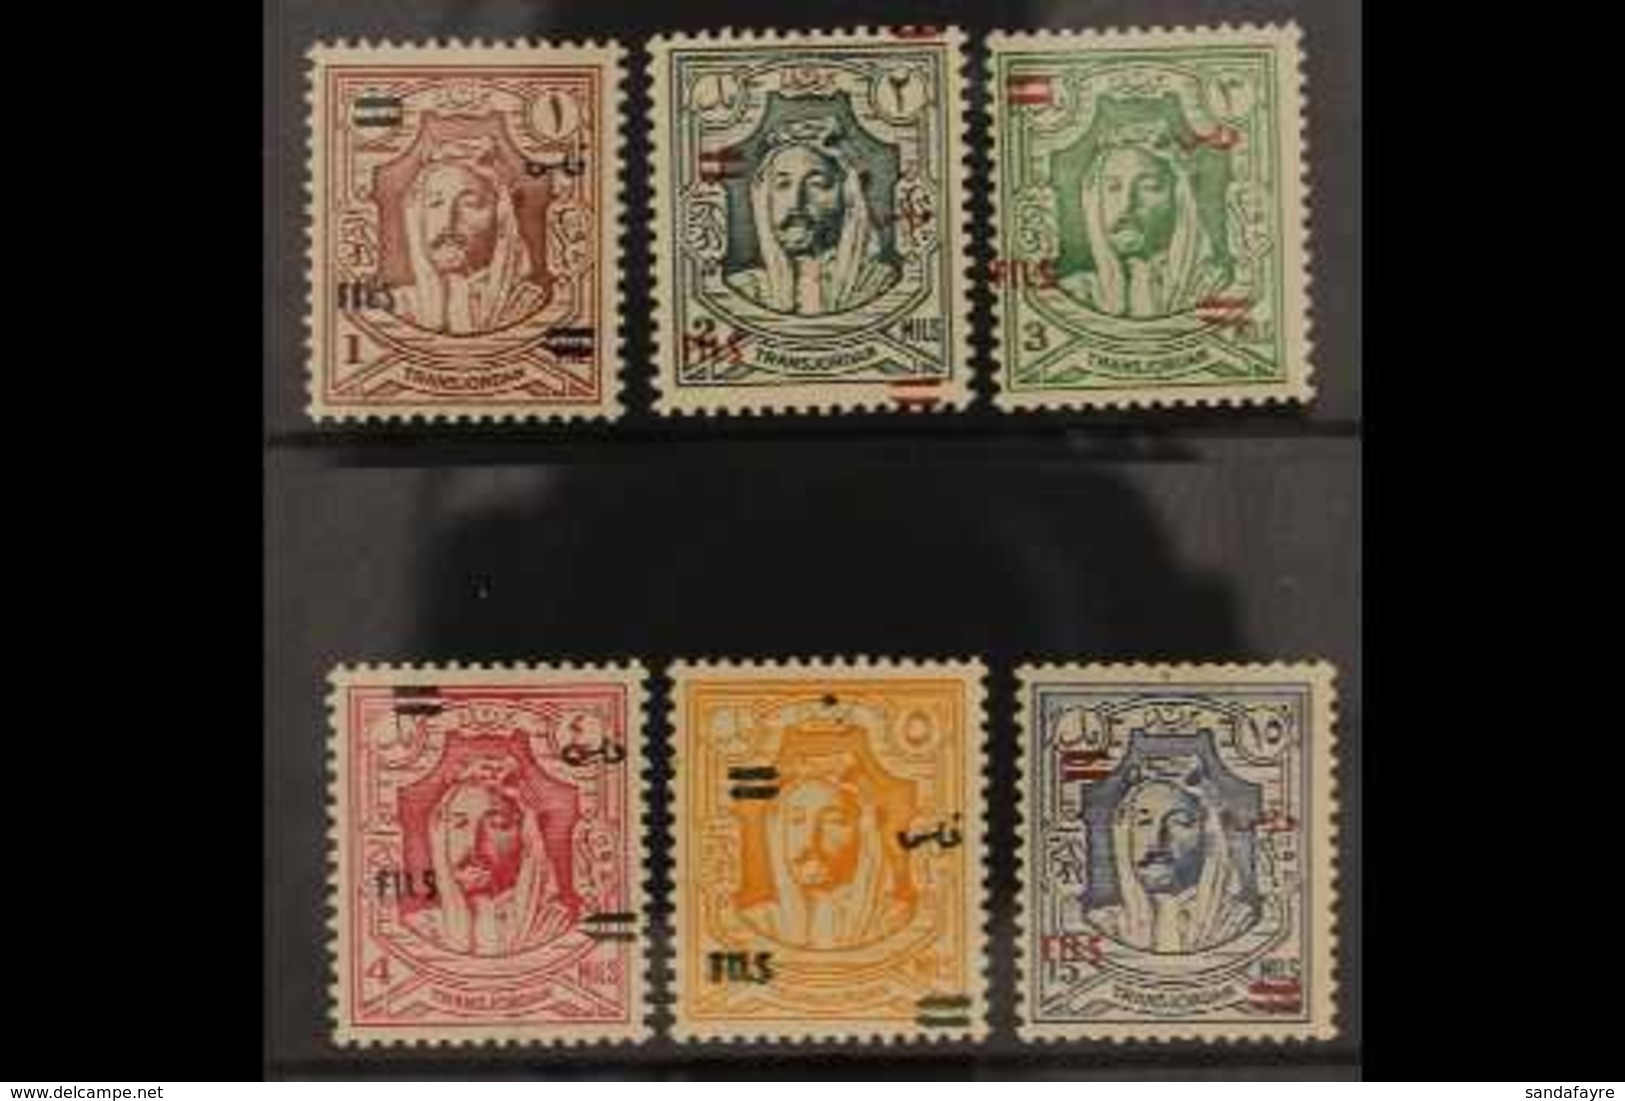 1952 Emir Complete No Wmk Overprinted Set, SG 307/12, Never Hinged Mint (6 Stamps) For More Images, Please Visit Http:// - Jordan